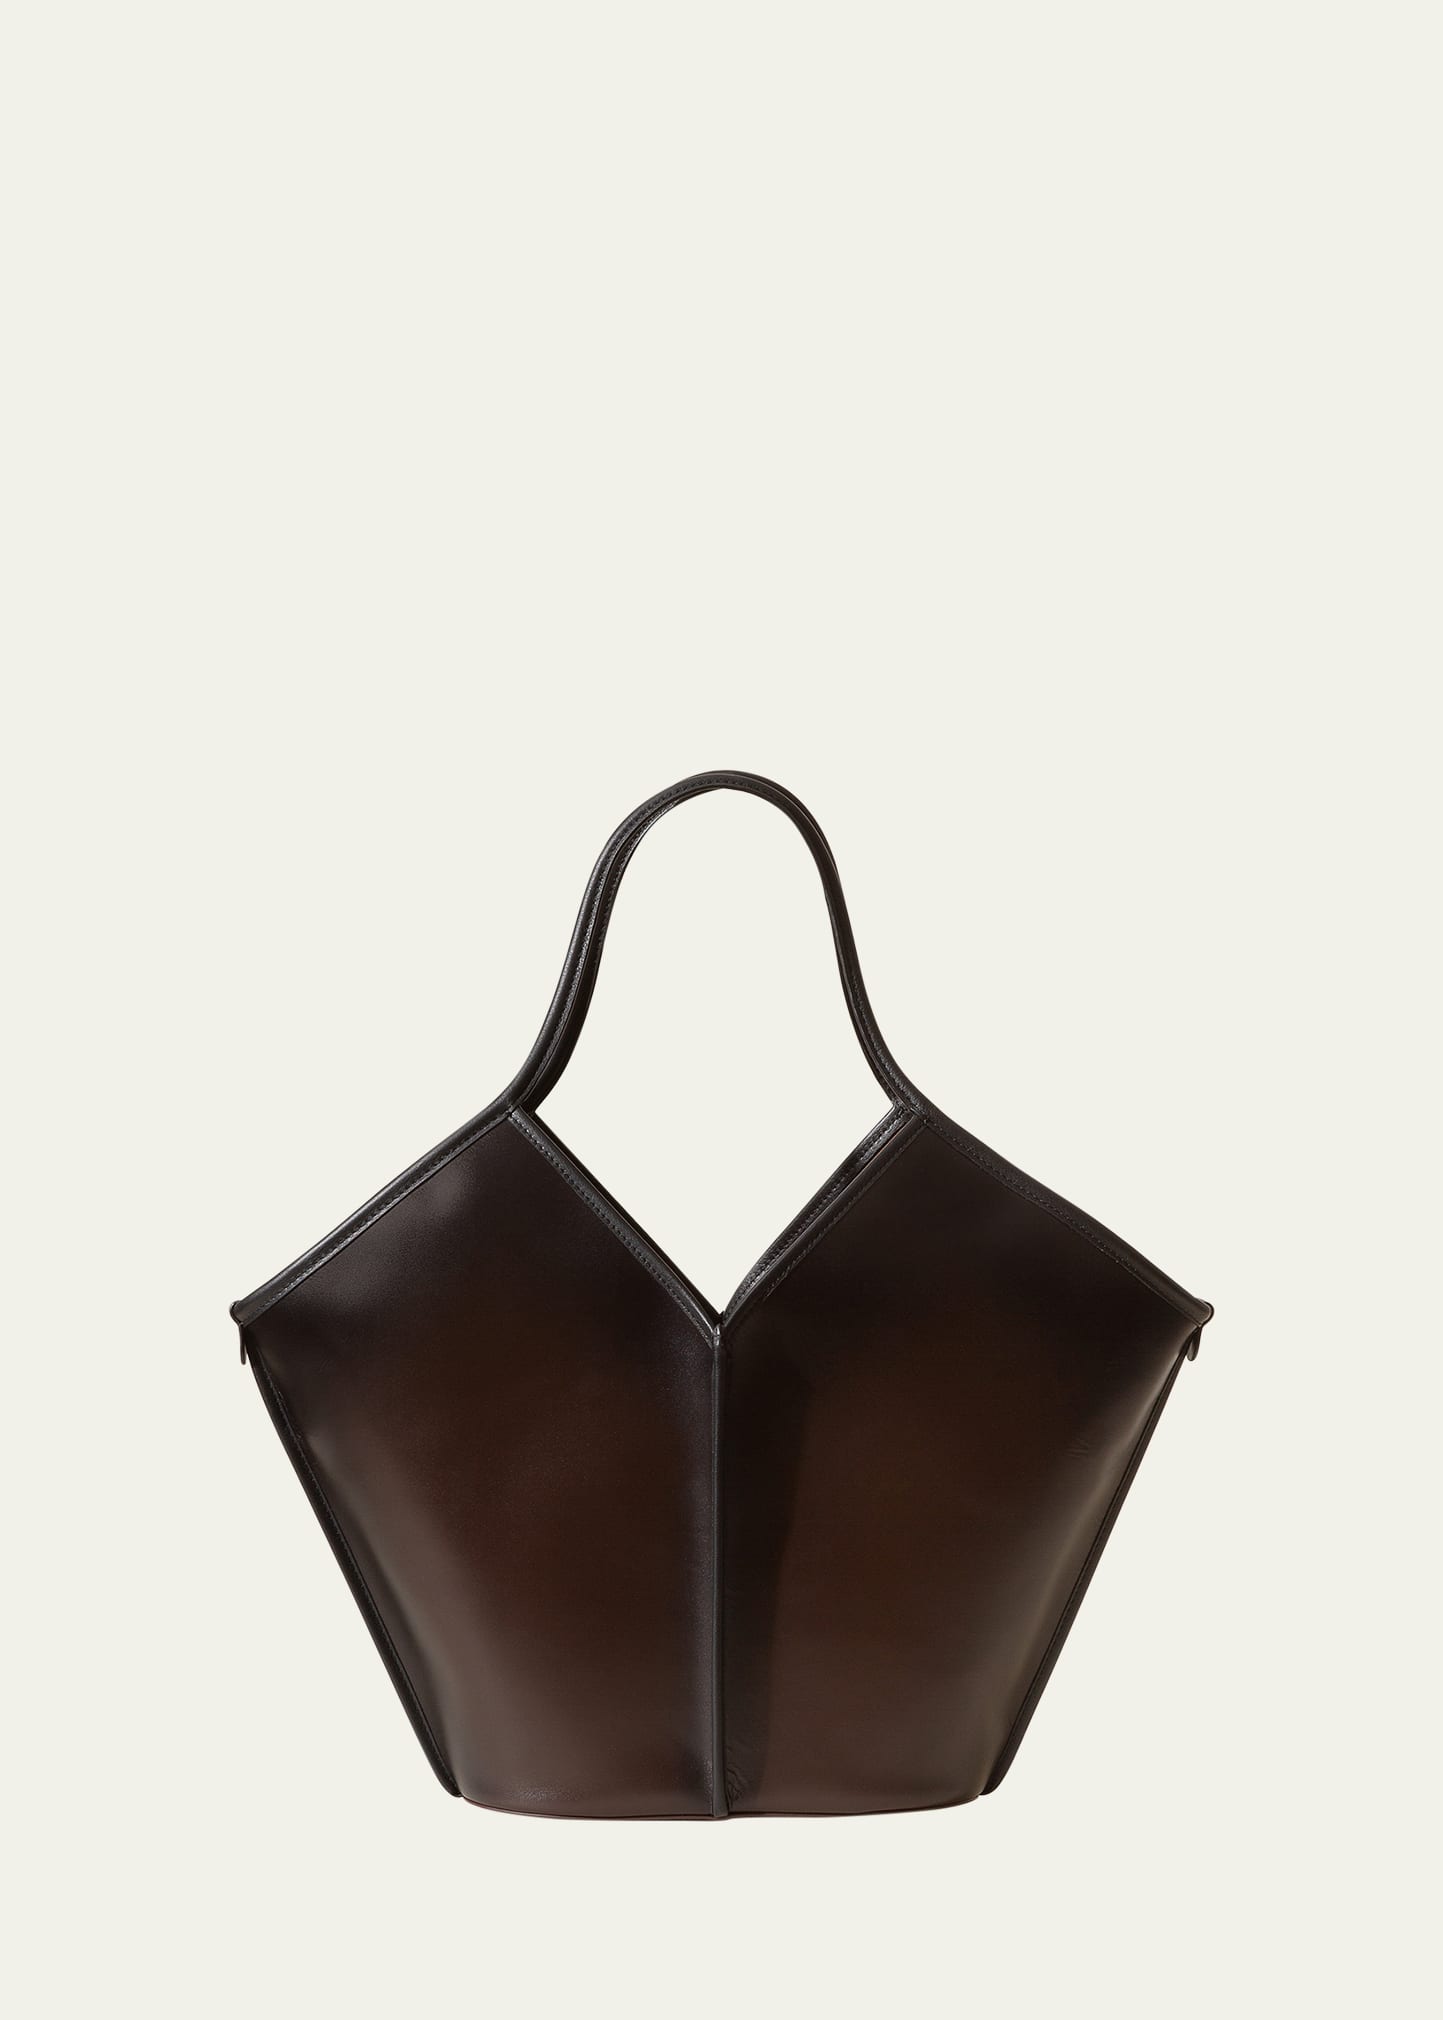 Calella Air-Brushed Leather Tote Bag